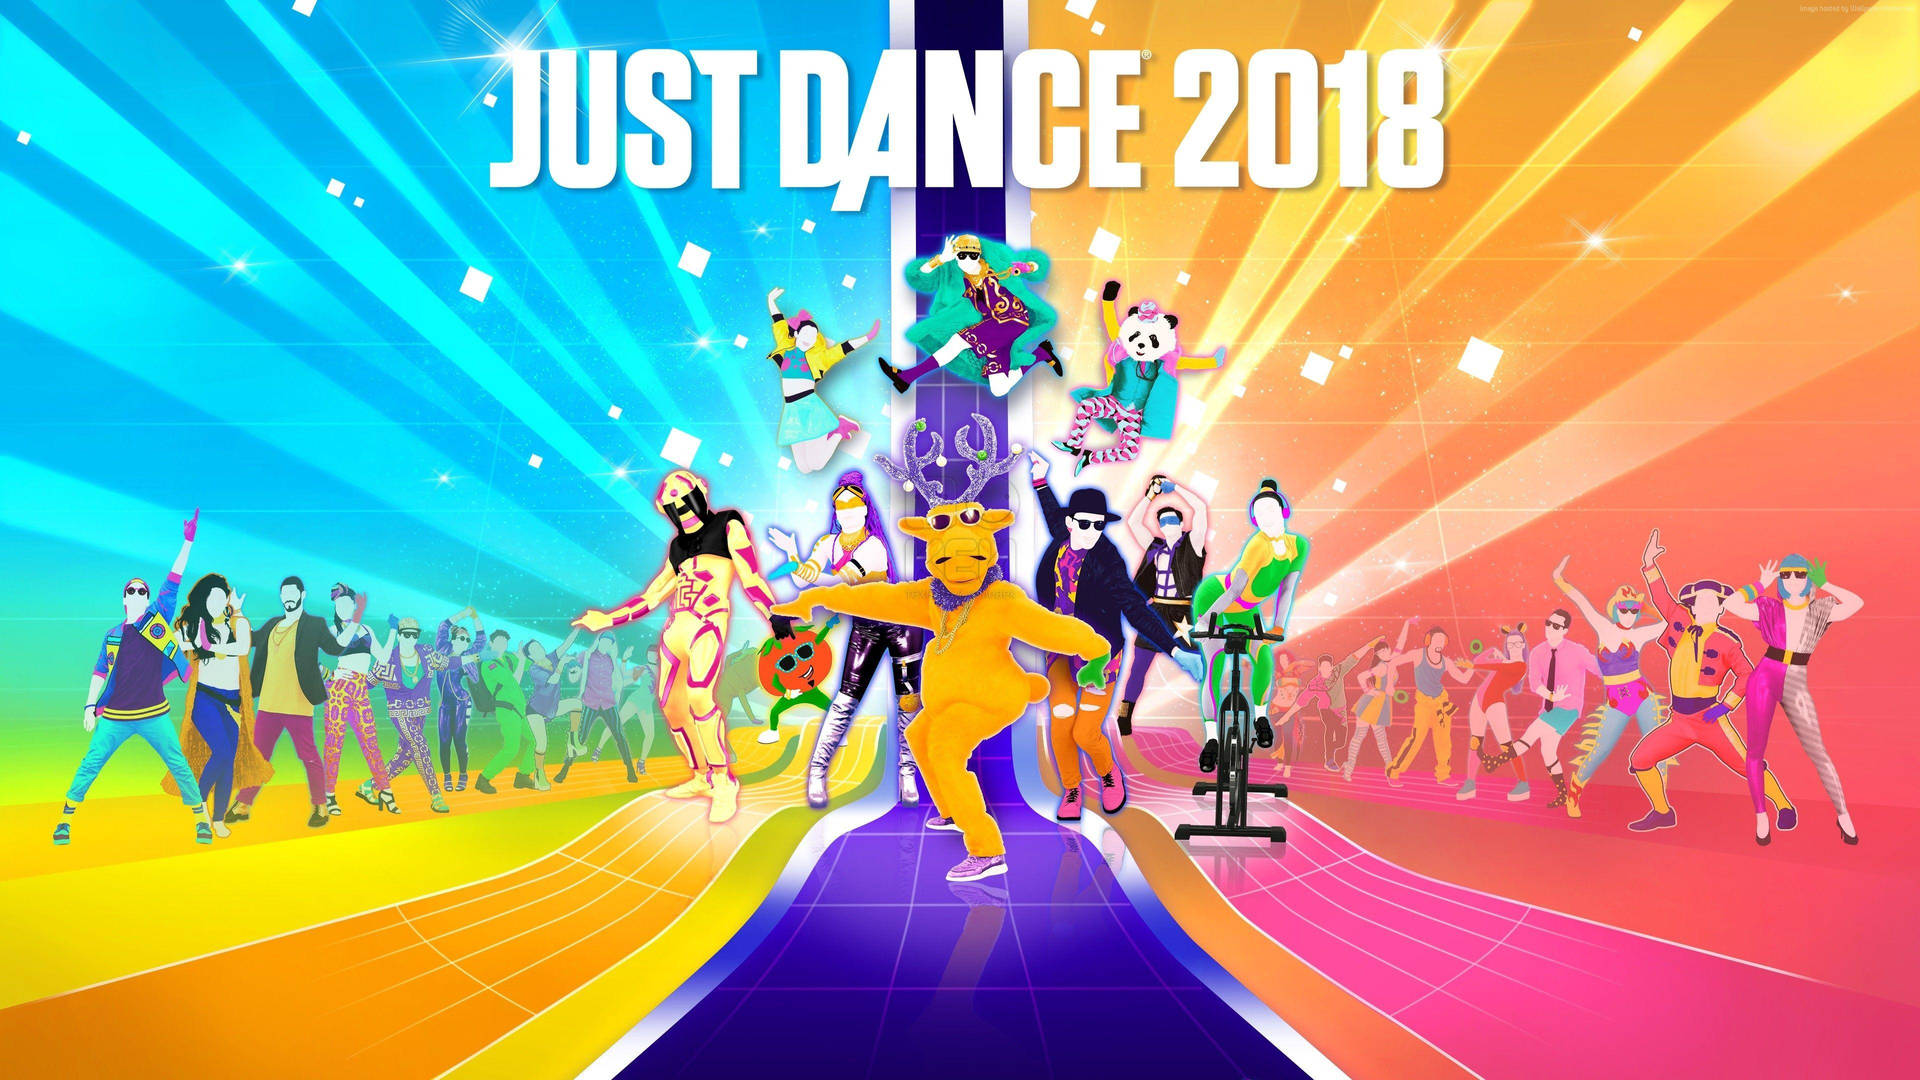 Bara Dansa 2018 Catwalk Affisch Wallpaper